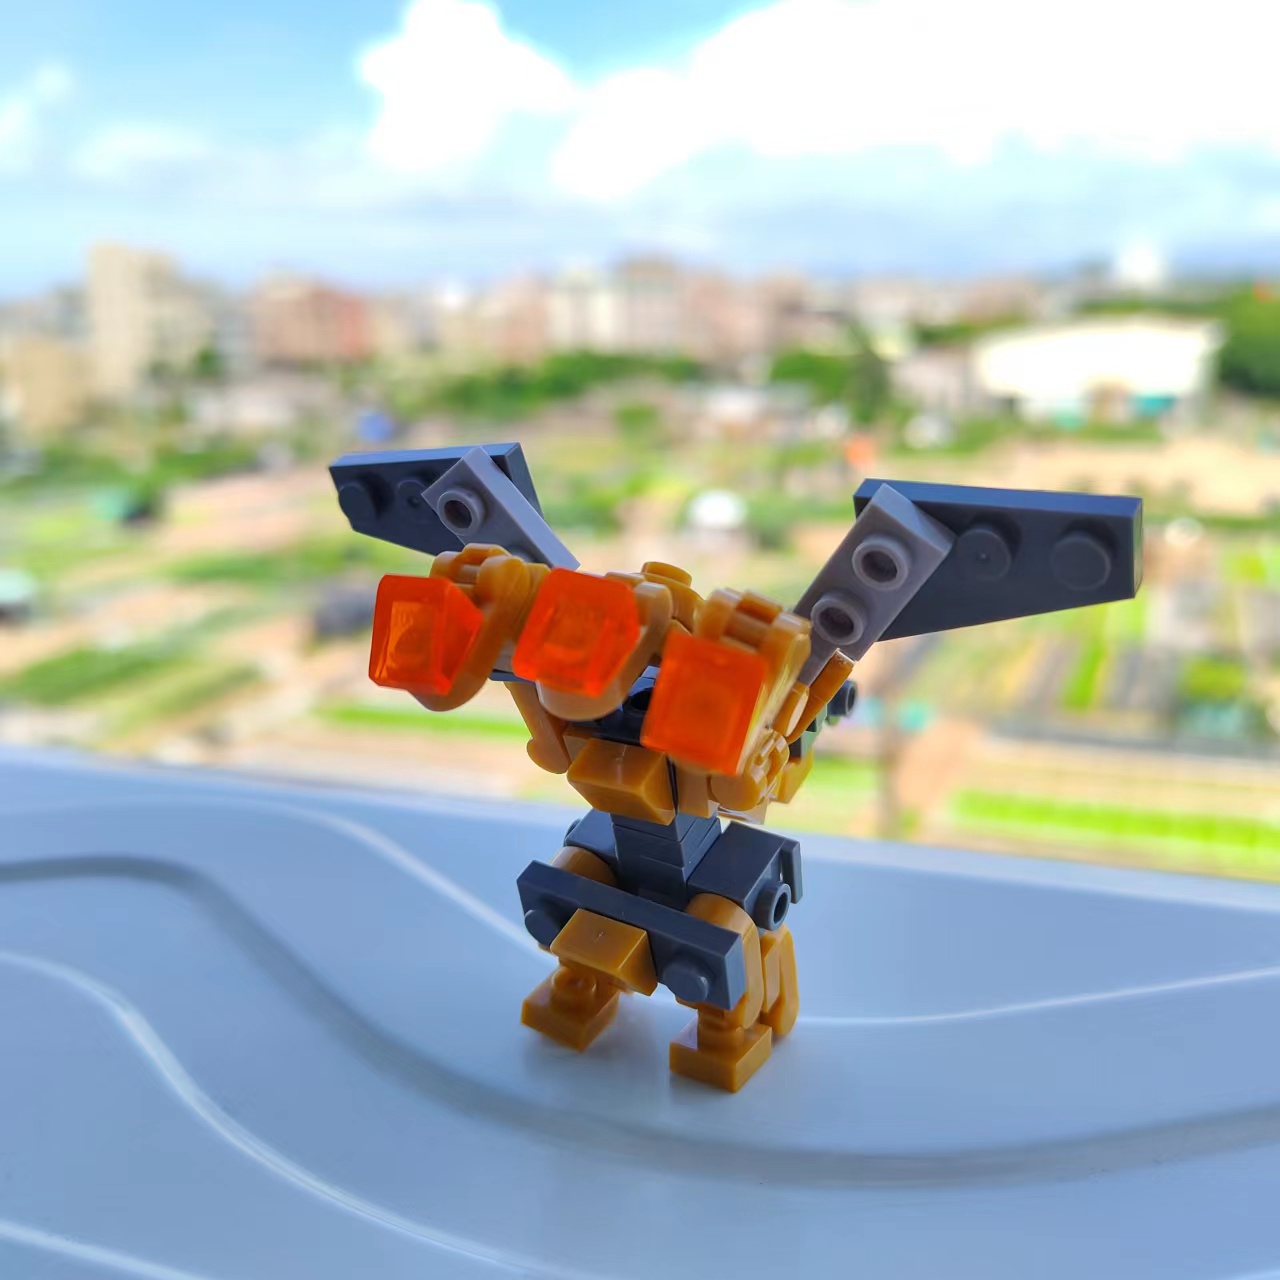 【三头金龙机器人-可直接变形】机甲MOC积木小型迷你外骨骼拼装